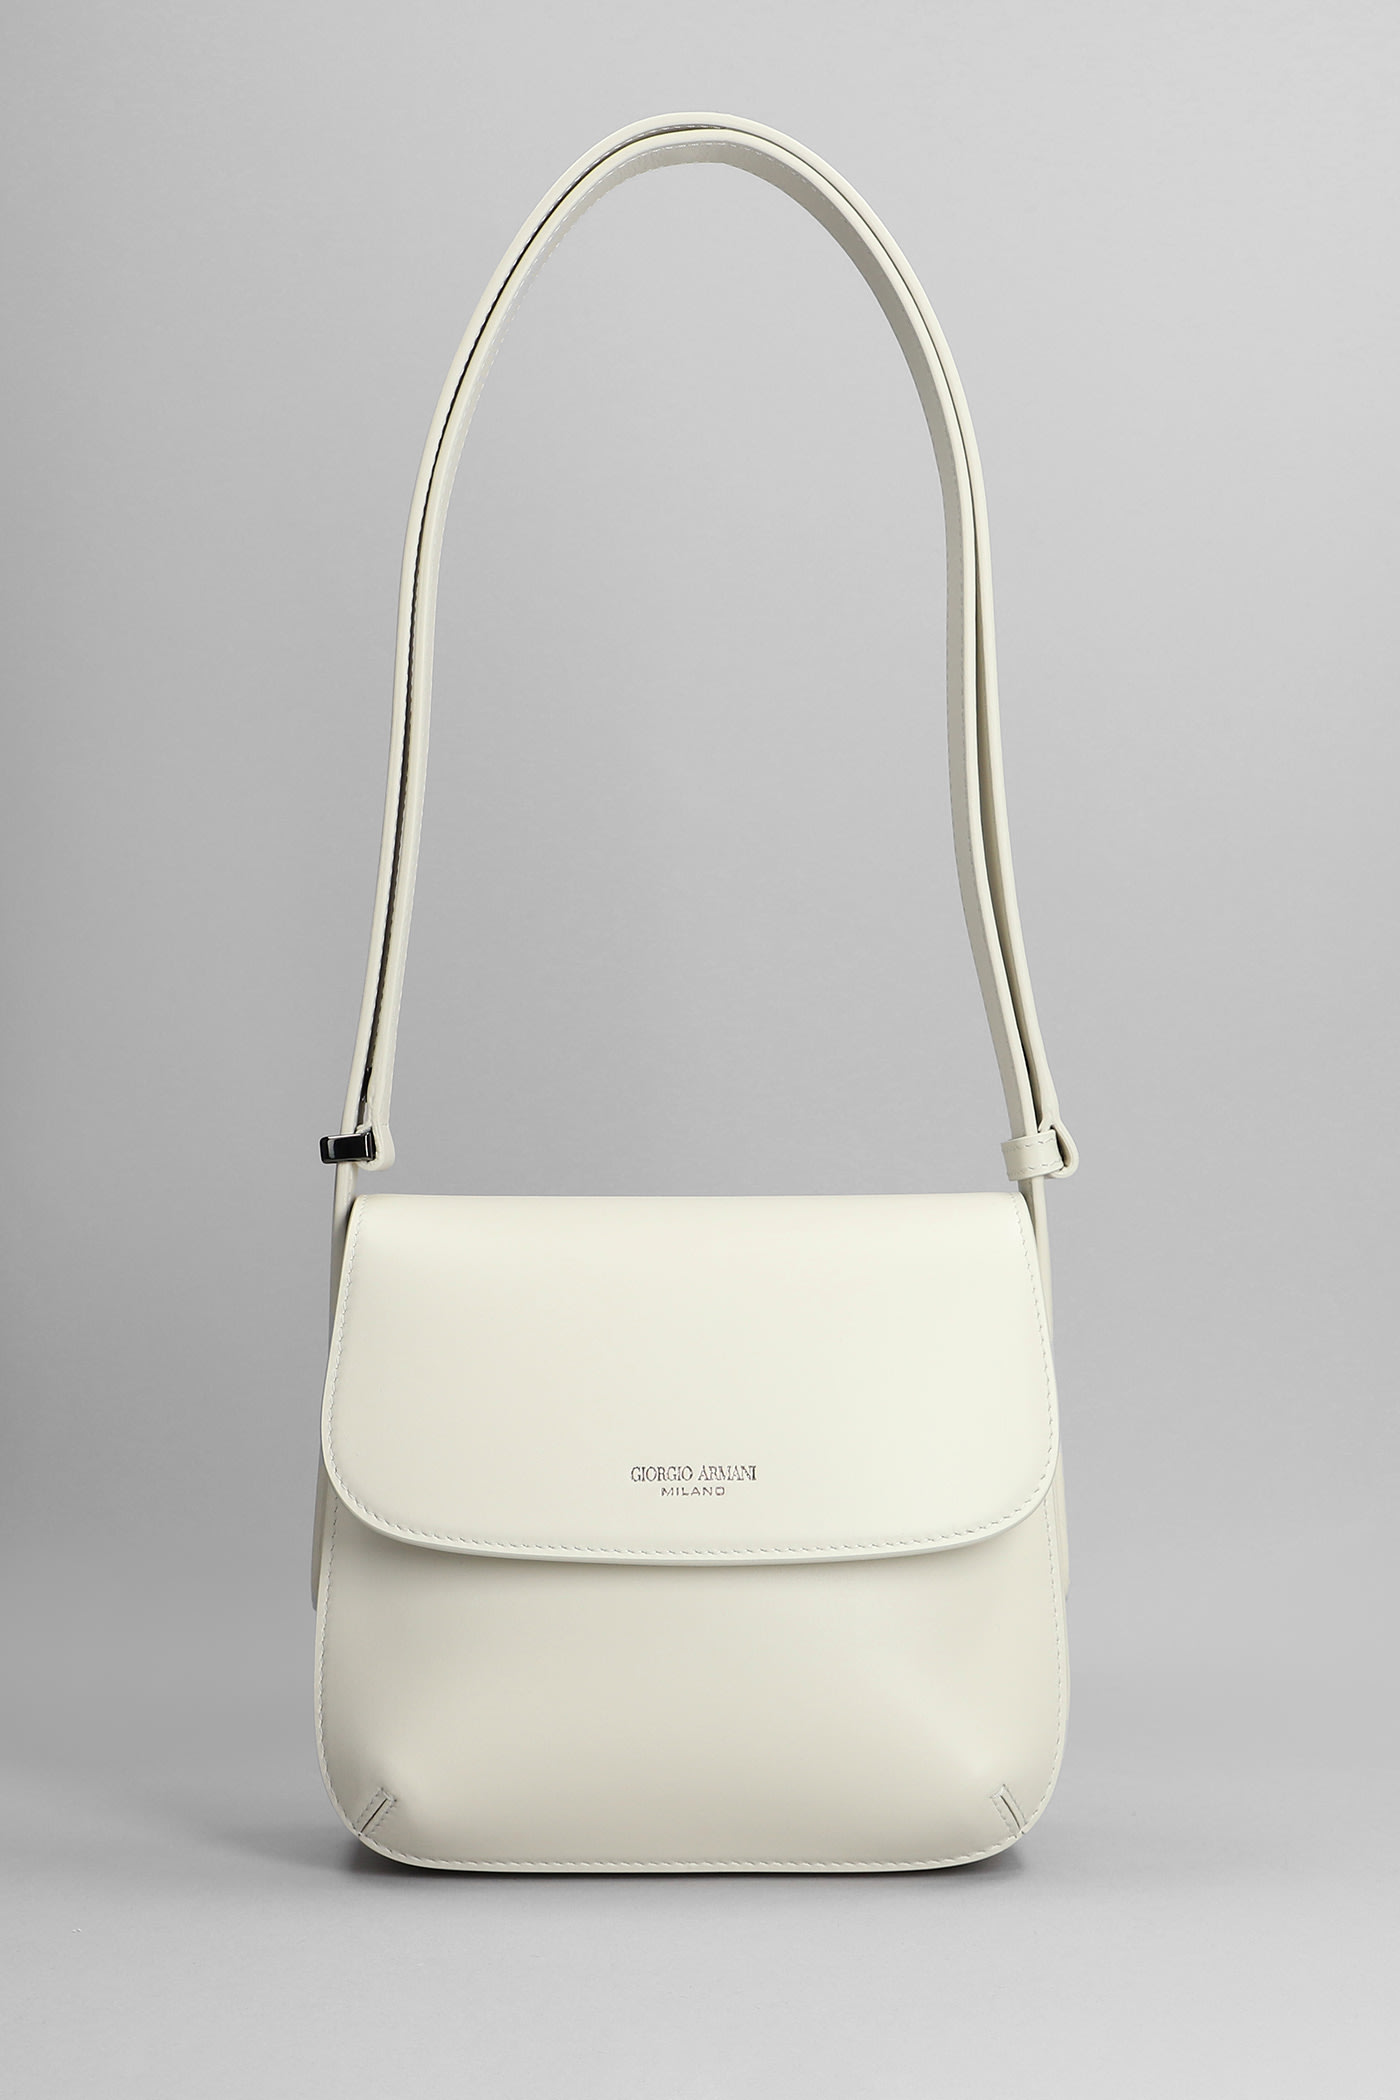 Giorgio Armani Shoulder Bag In White Leather